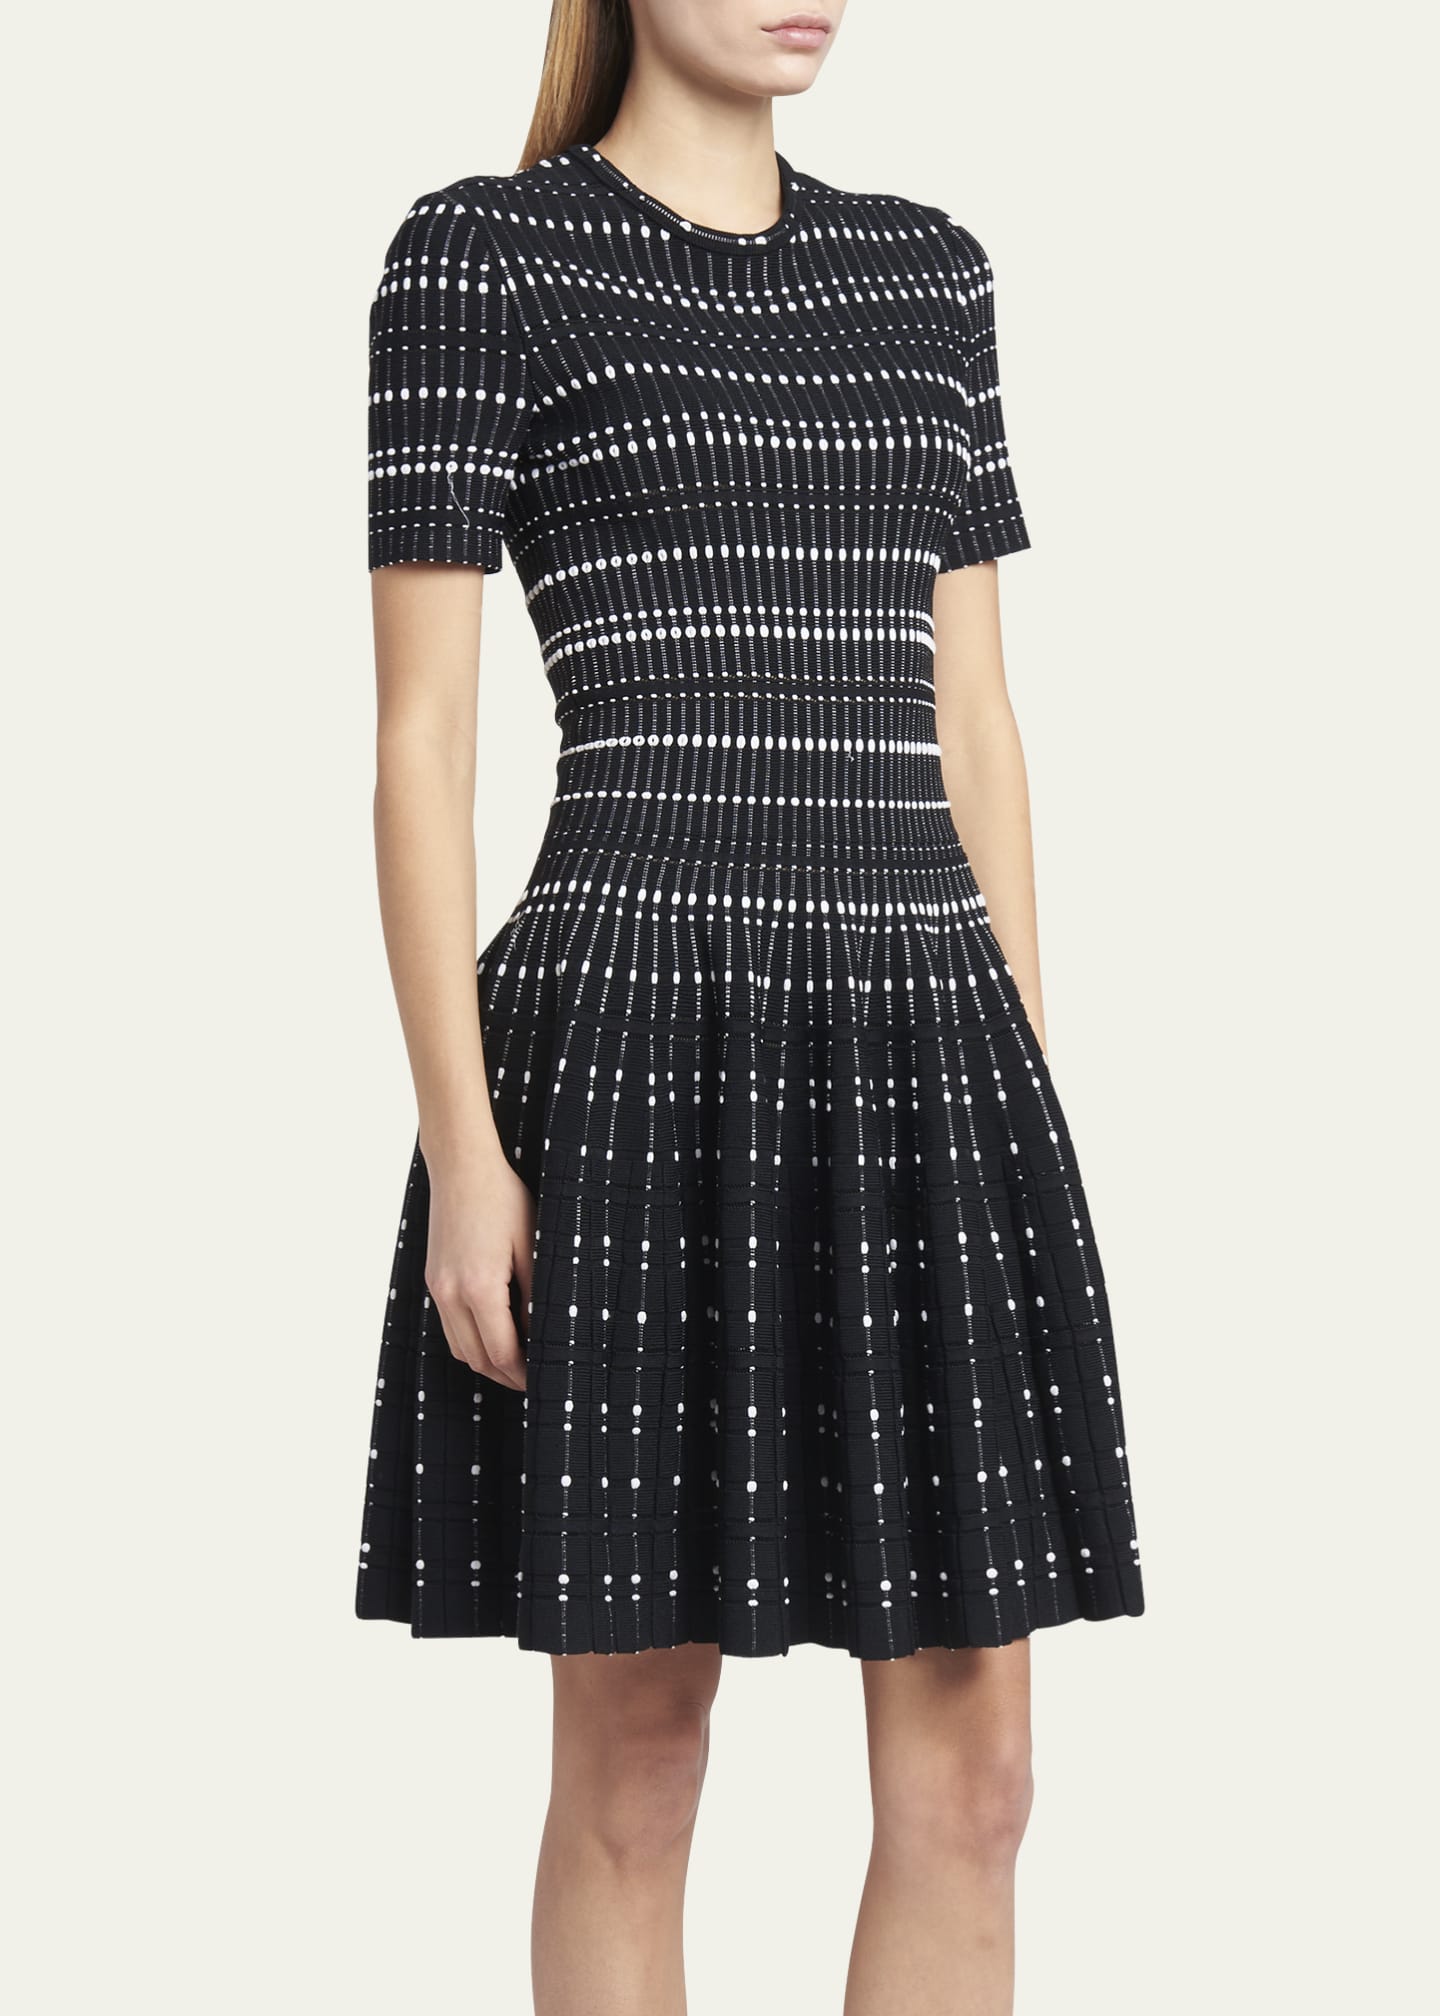 Alexander McQueen Contrast Dot Knit Mini Dress - Bergdorf Goodman